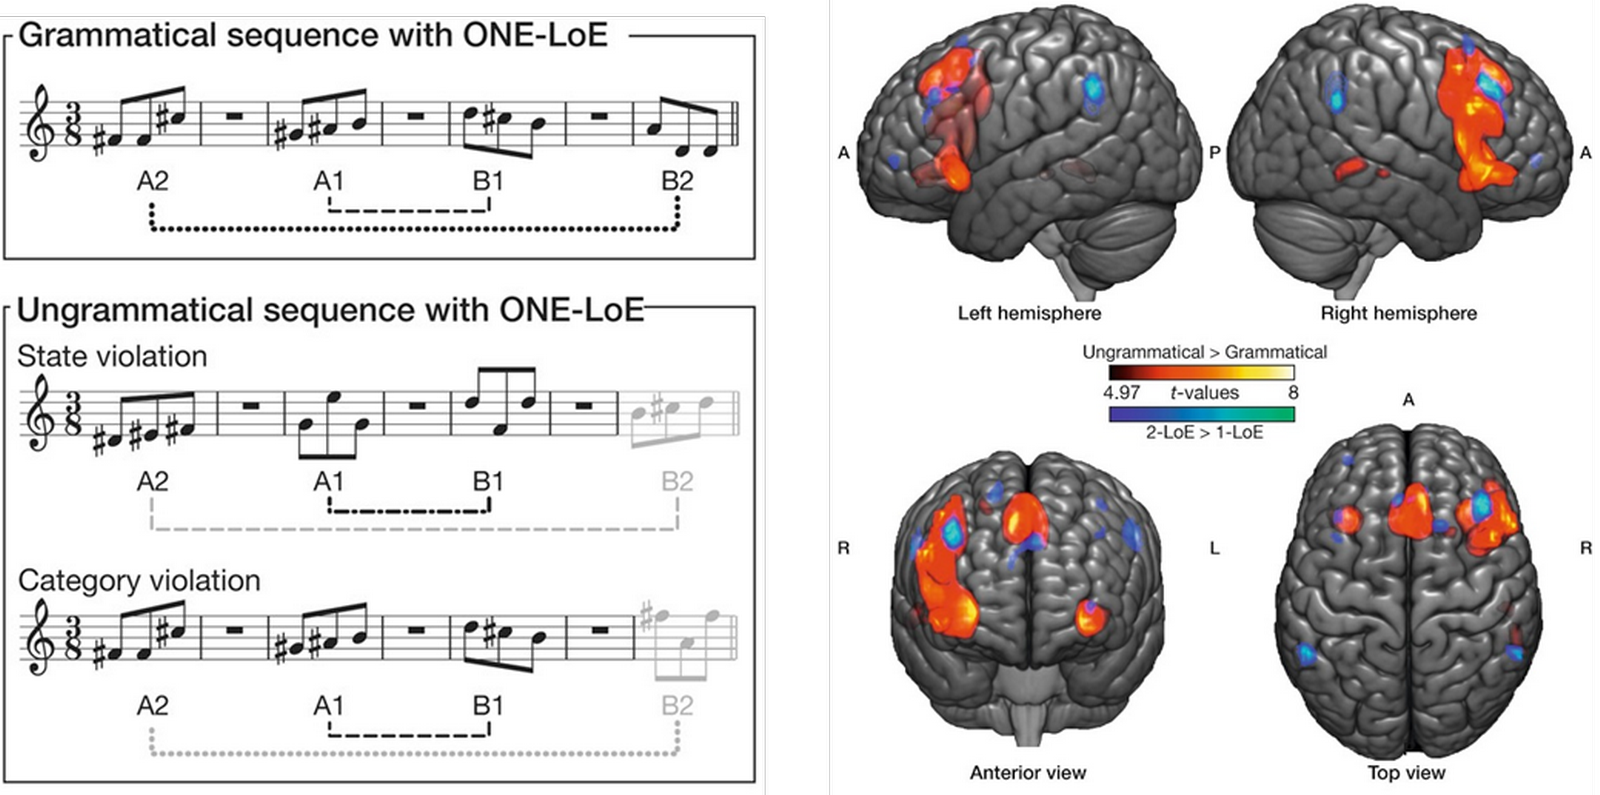 Chronique Caro: La musique et ses effets sur notre cerveau